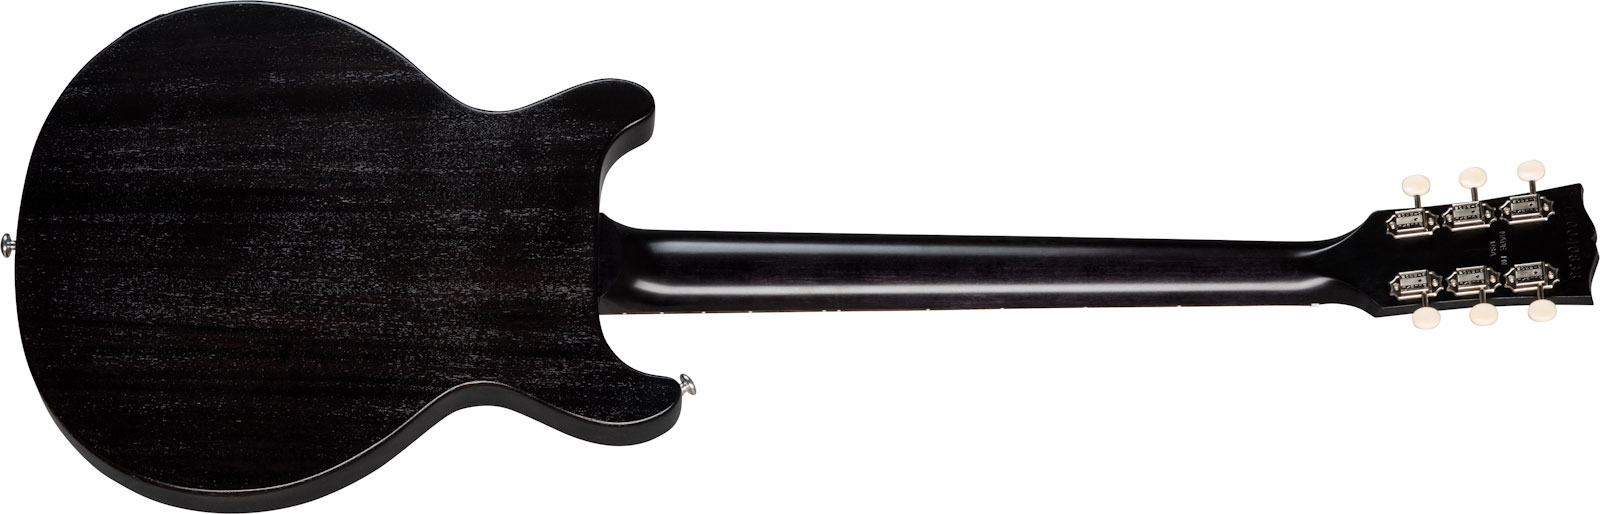 Gibson Les Paul Junior Tribute Dc Modern P90 - Worn Ebony - Guitarra eléctrica de doble corte - Variation 1